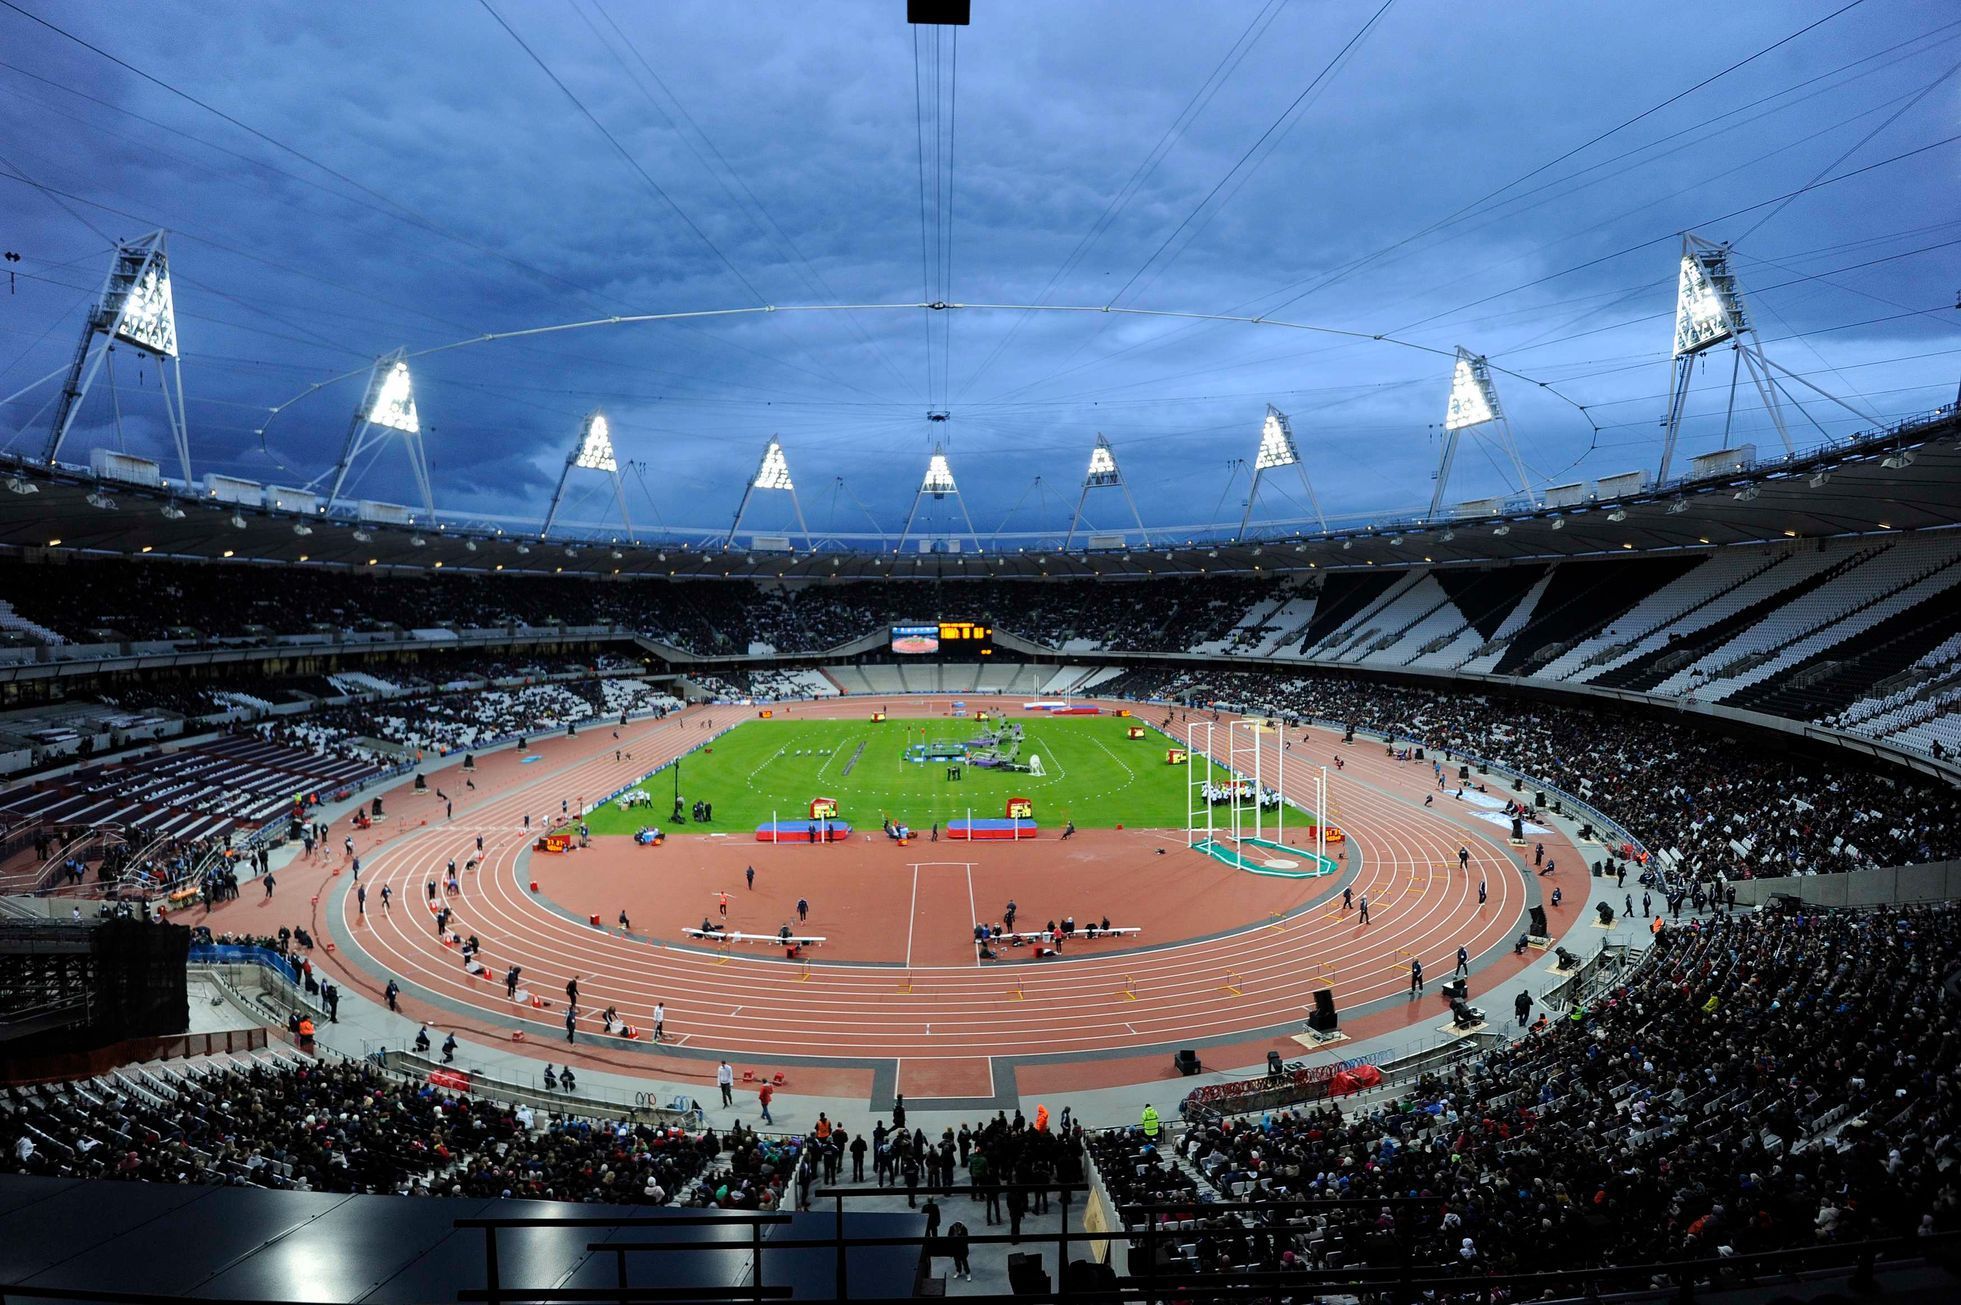 Olympijský stadion pro hry v Londýně byl oficiálně otevřen